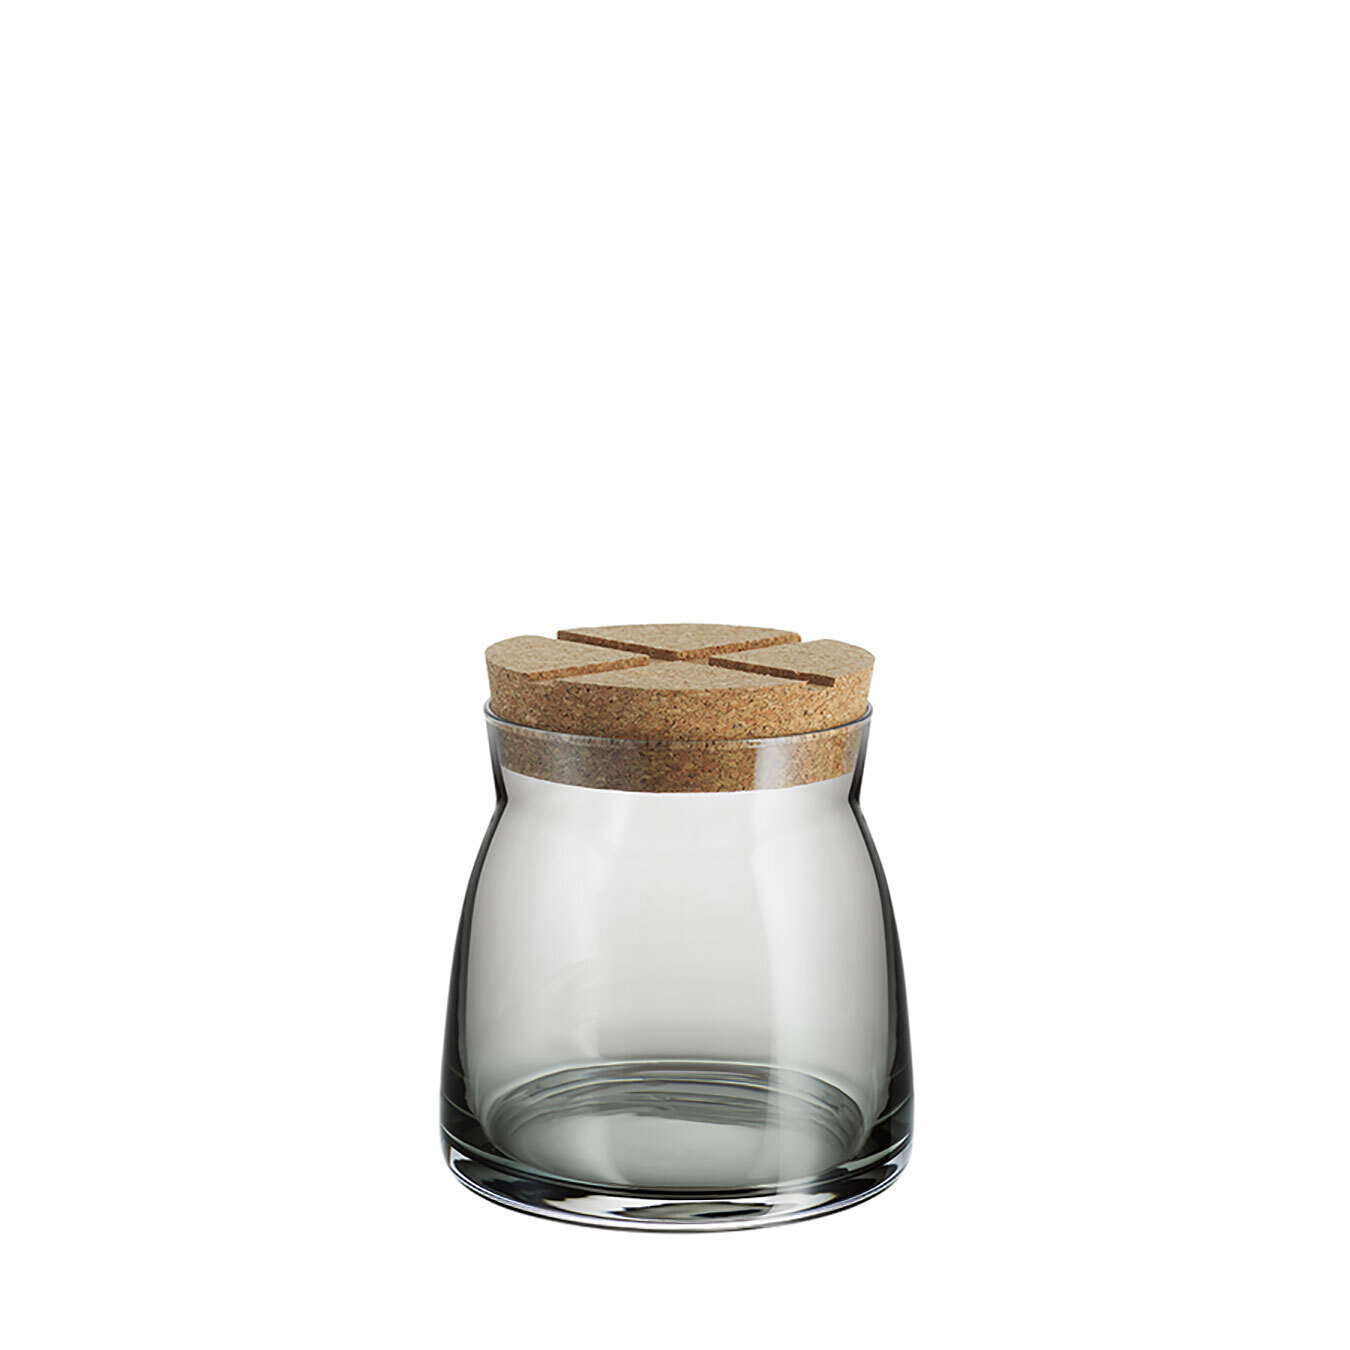 Kosta Boda Bruk Jar With Cork Grey Medium 7051708